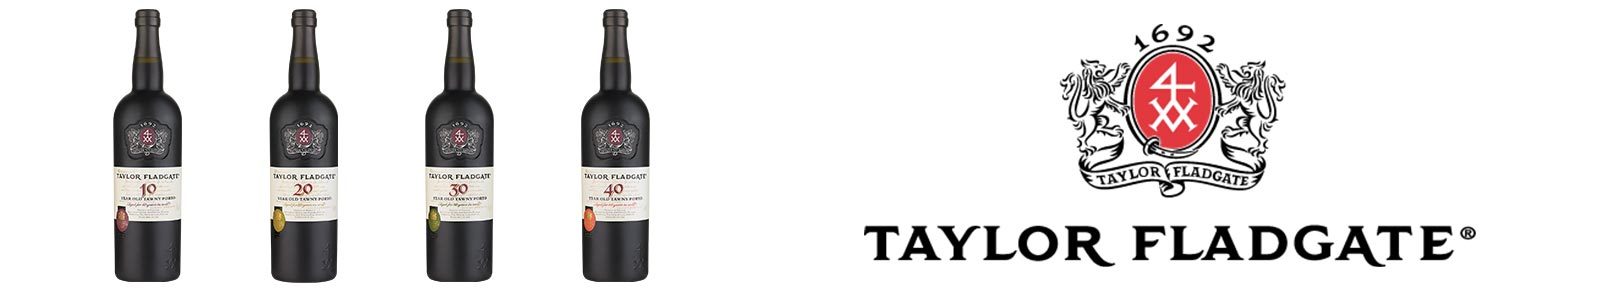 Taylor Fladgate Aged Tawny Port wine bottles